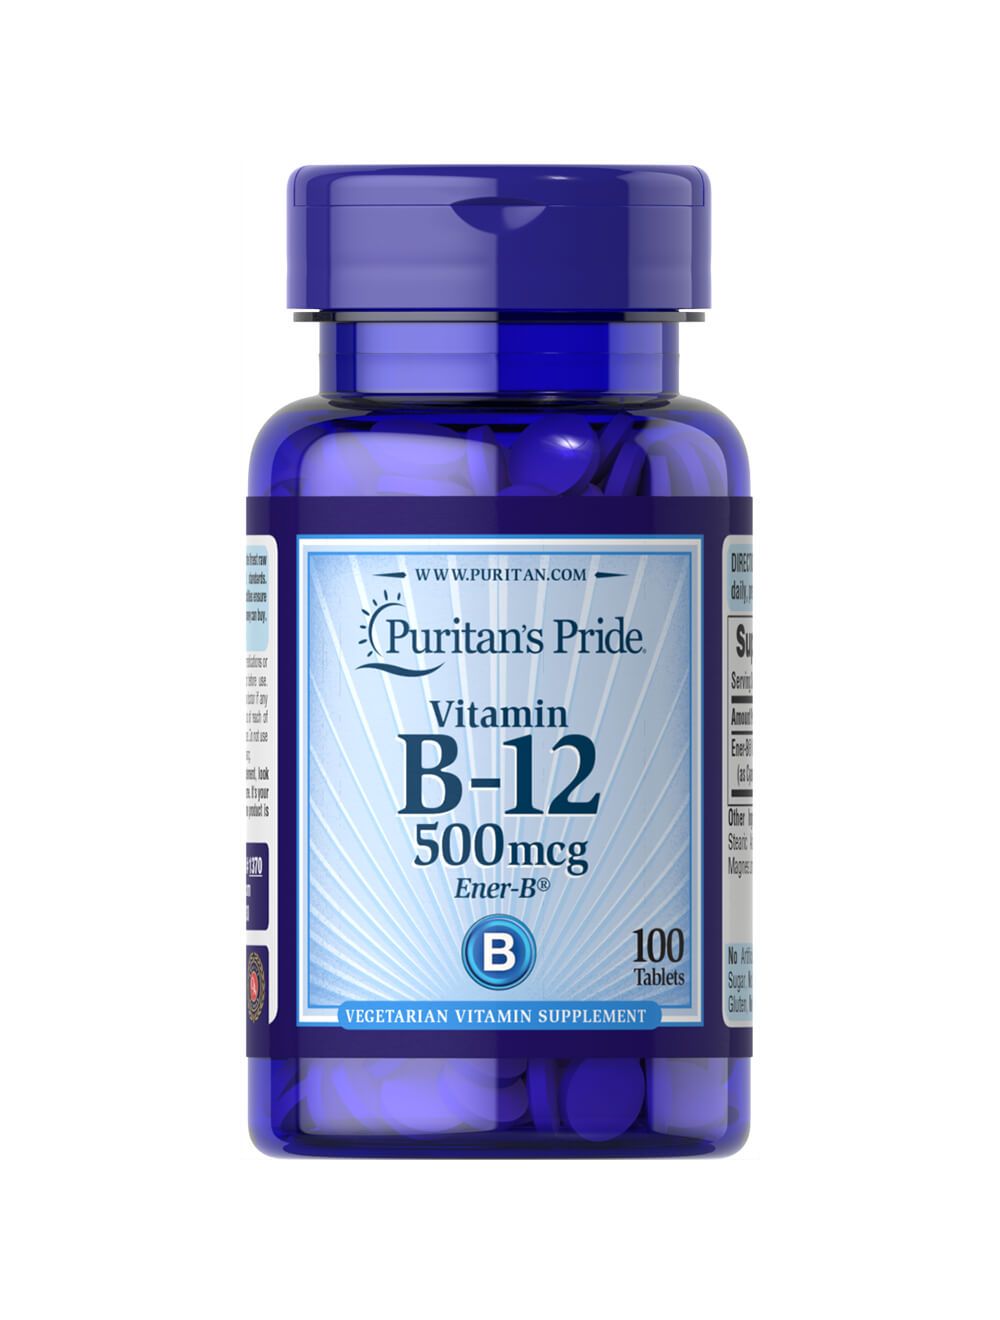 Bevestigen verbrand Vrijgevig Puritan's Pride Vitamine B-12 500 mcg ener-B 100 Tabletten 1370